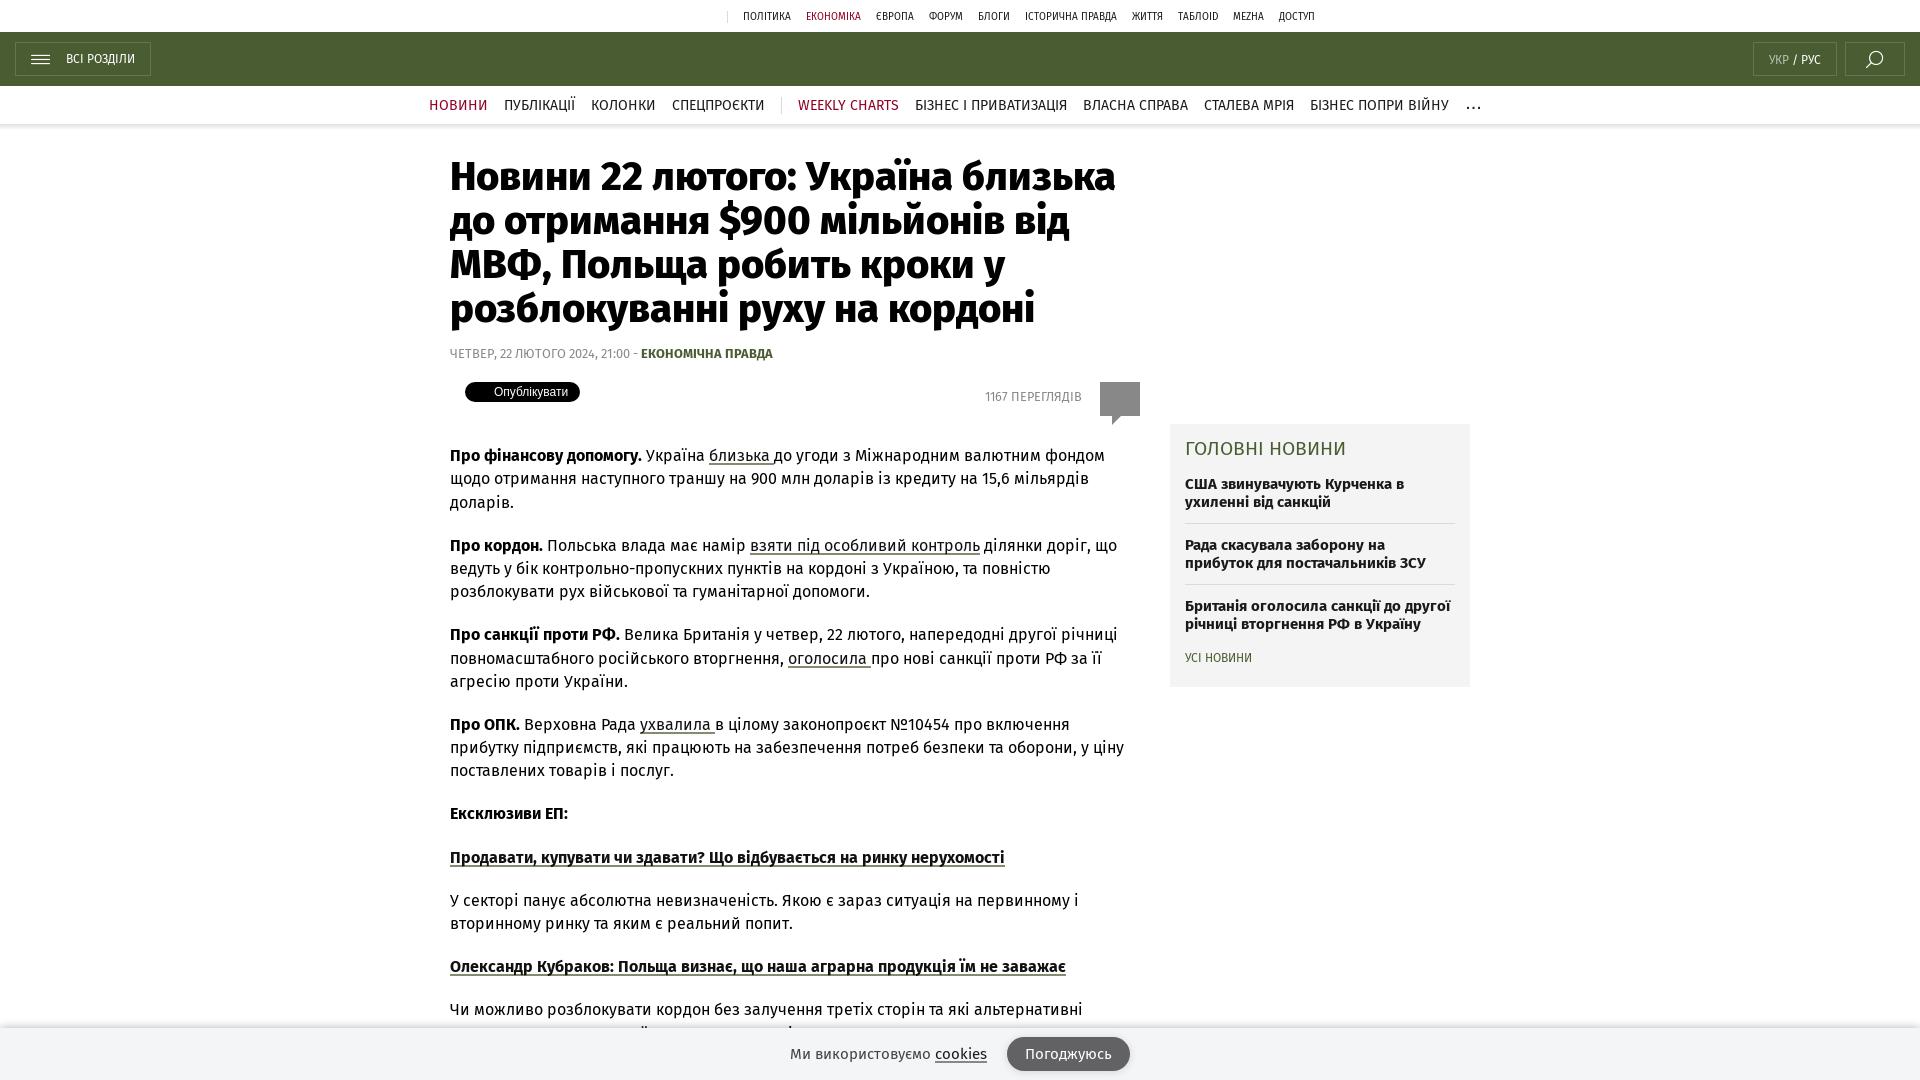 Wiadomość z 22 lutego: Ukraina otrzyma 900 mln dolarów od MFW, Polska podejmuje kroki w celu otwarcia ruchu granicznego |  Wiadomości Bota